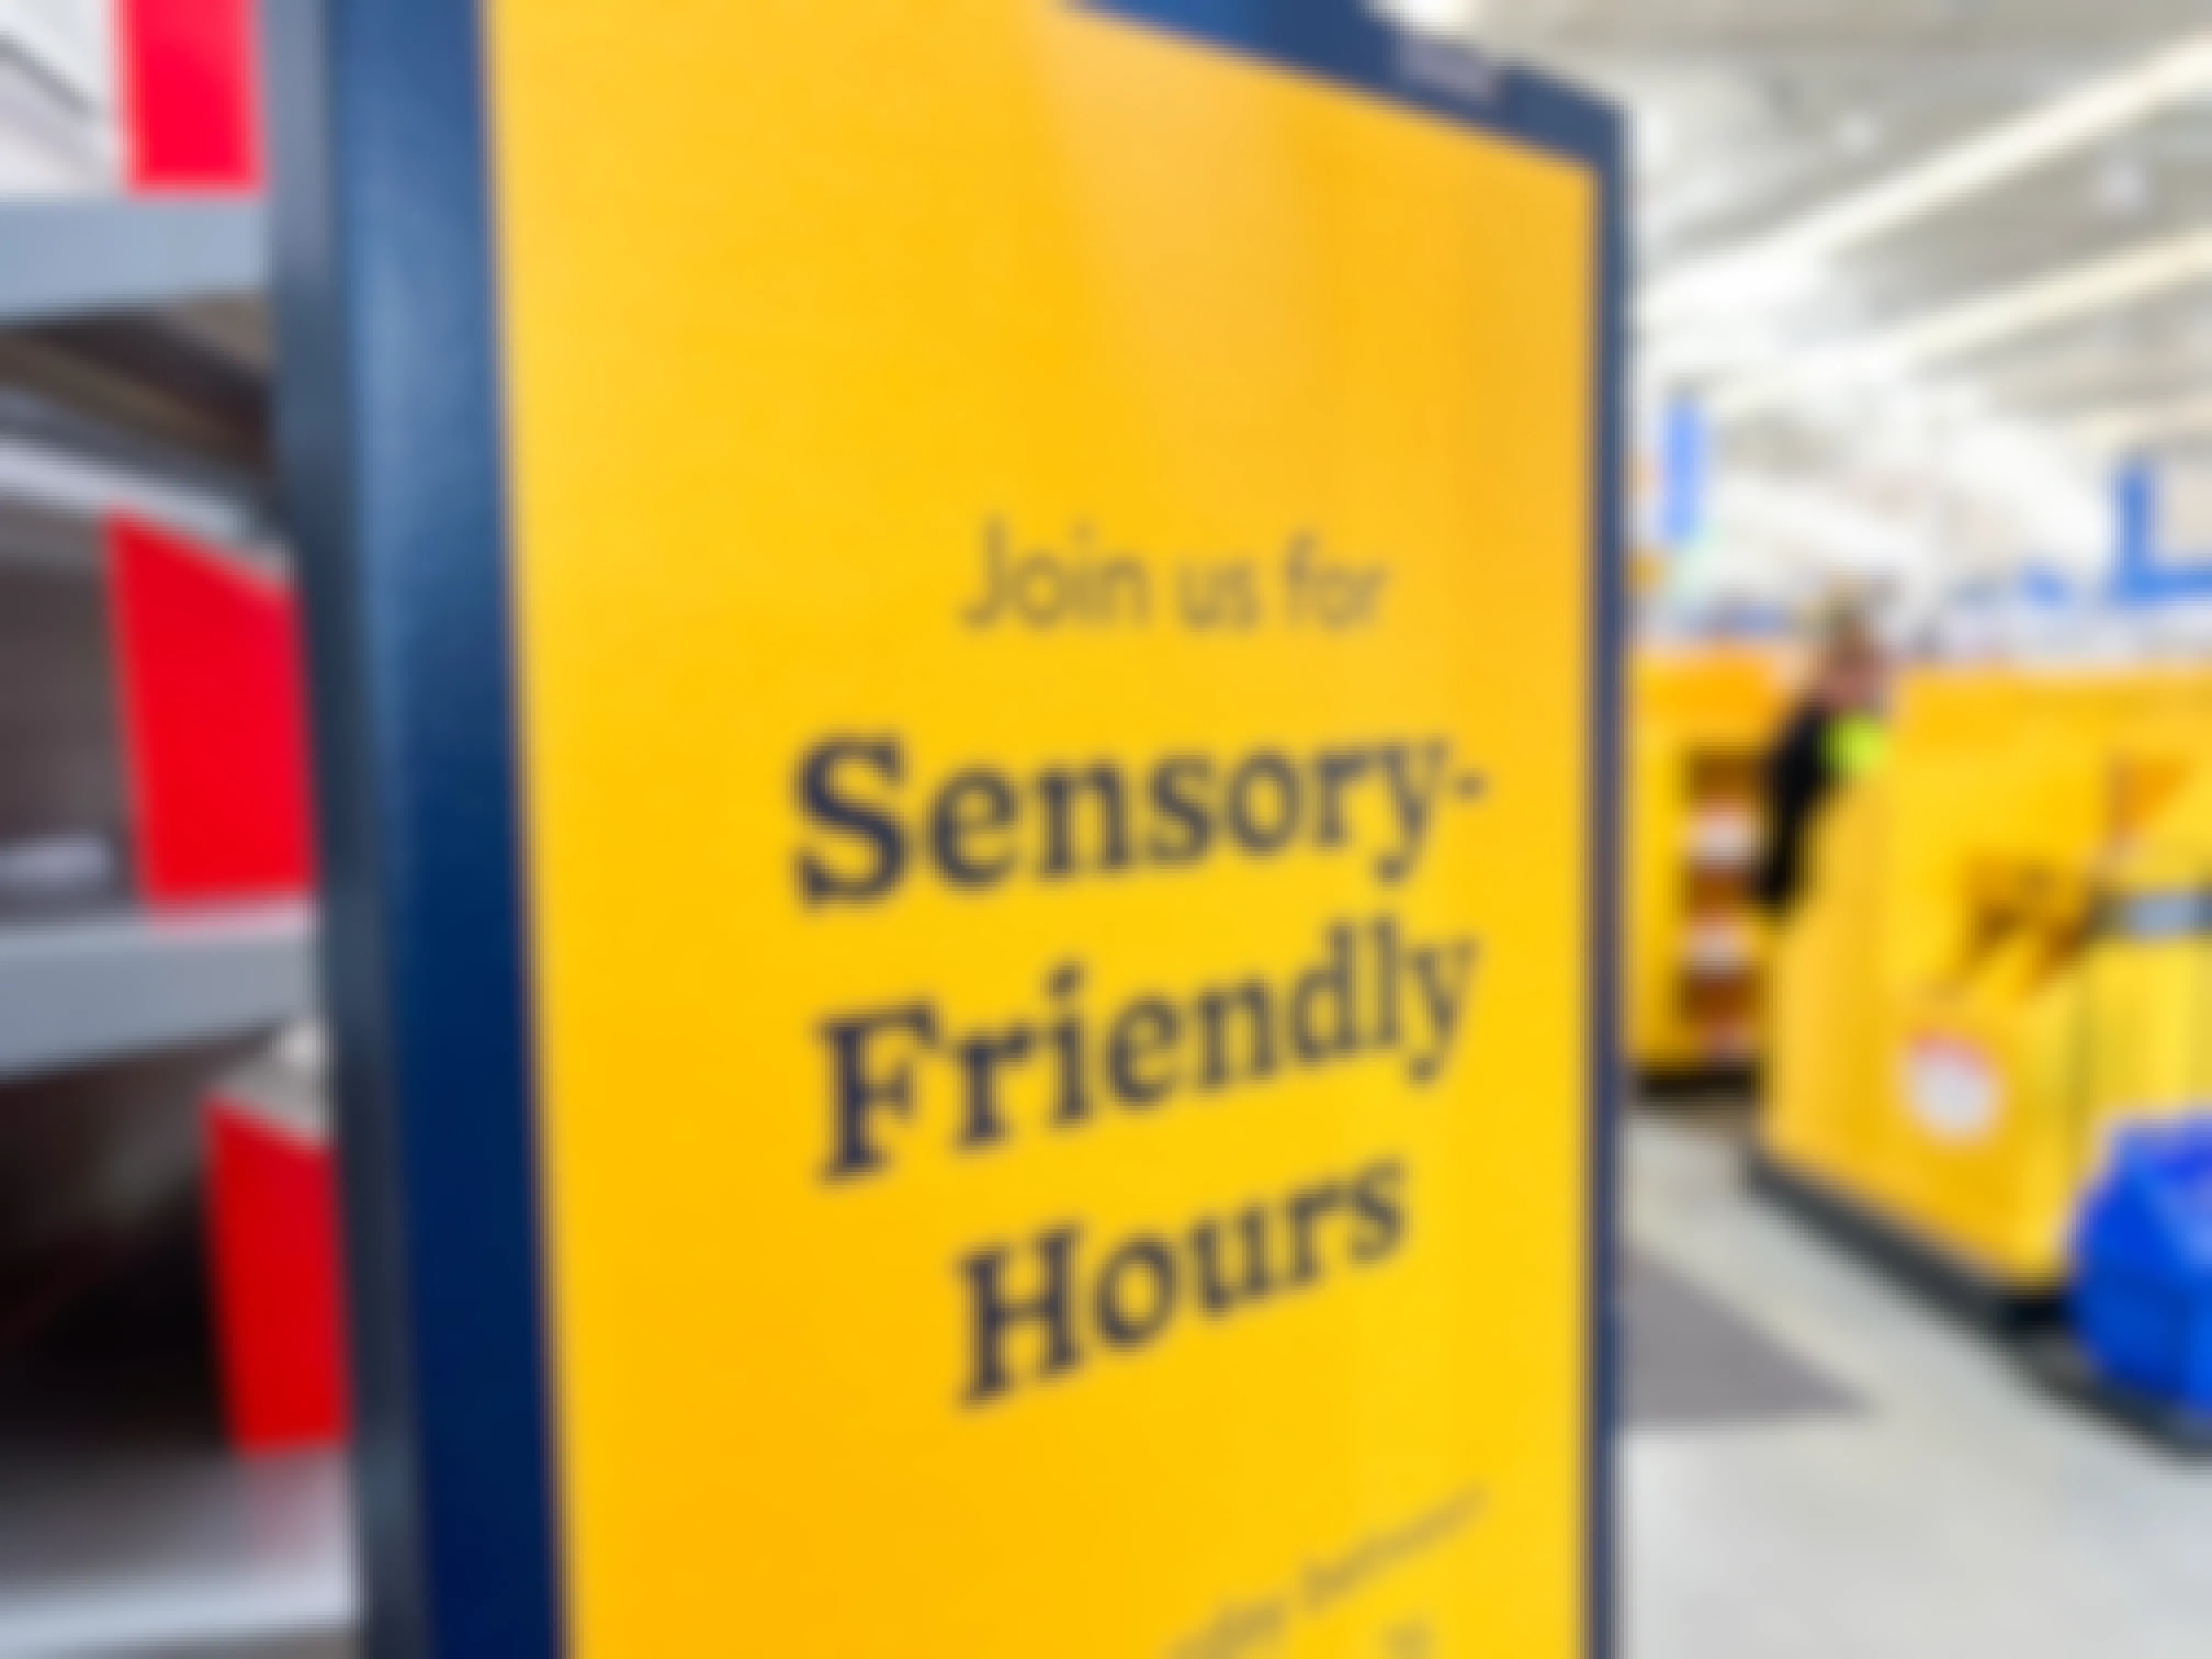 Walmart sensory friendly hours sign in a Walmart